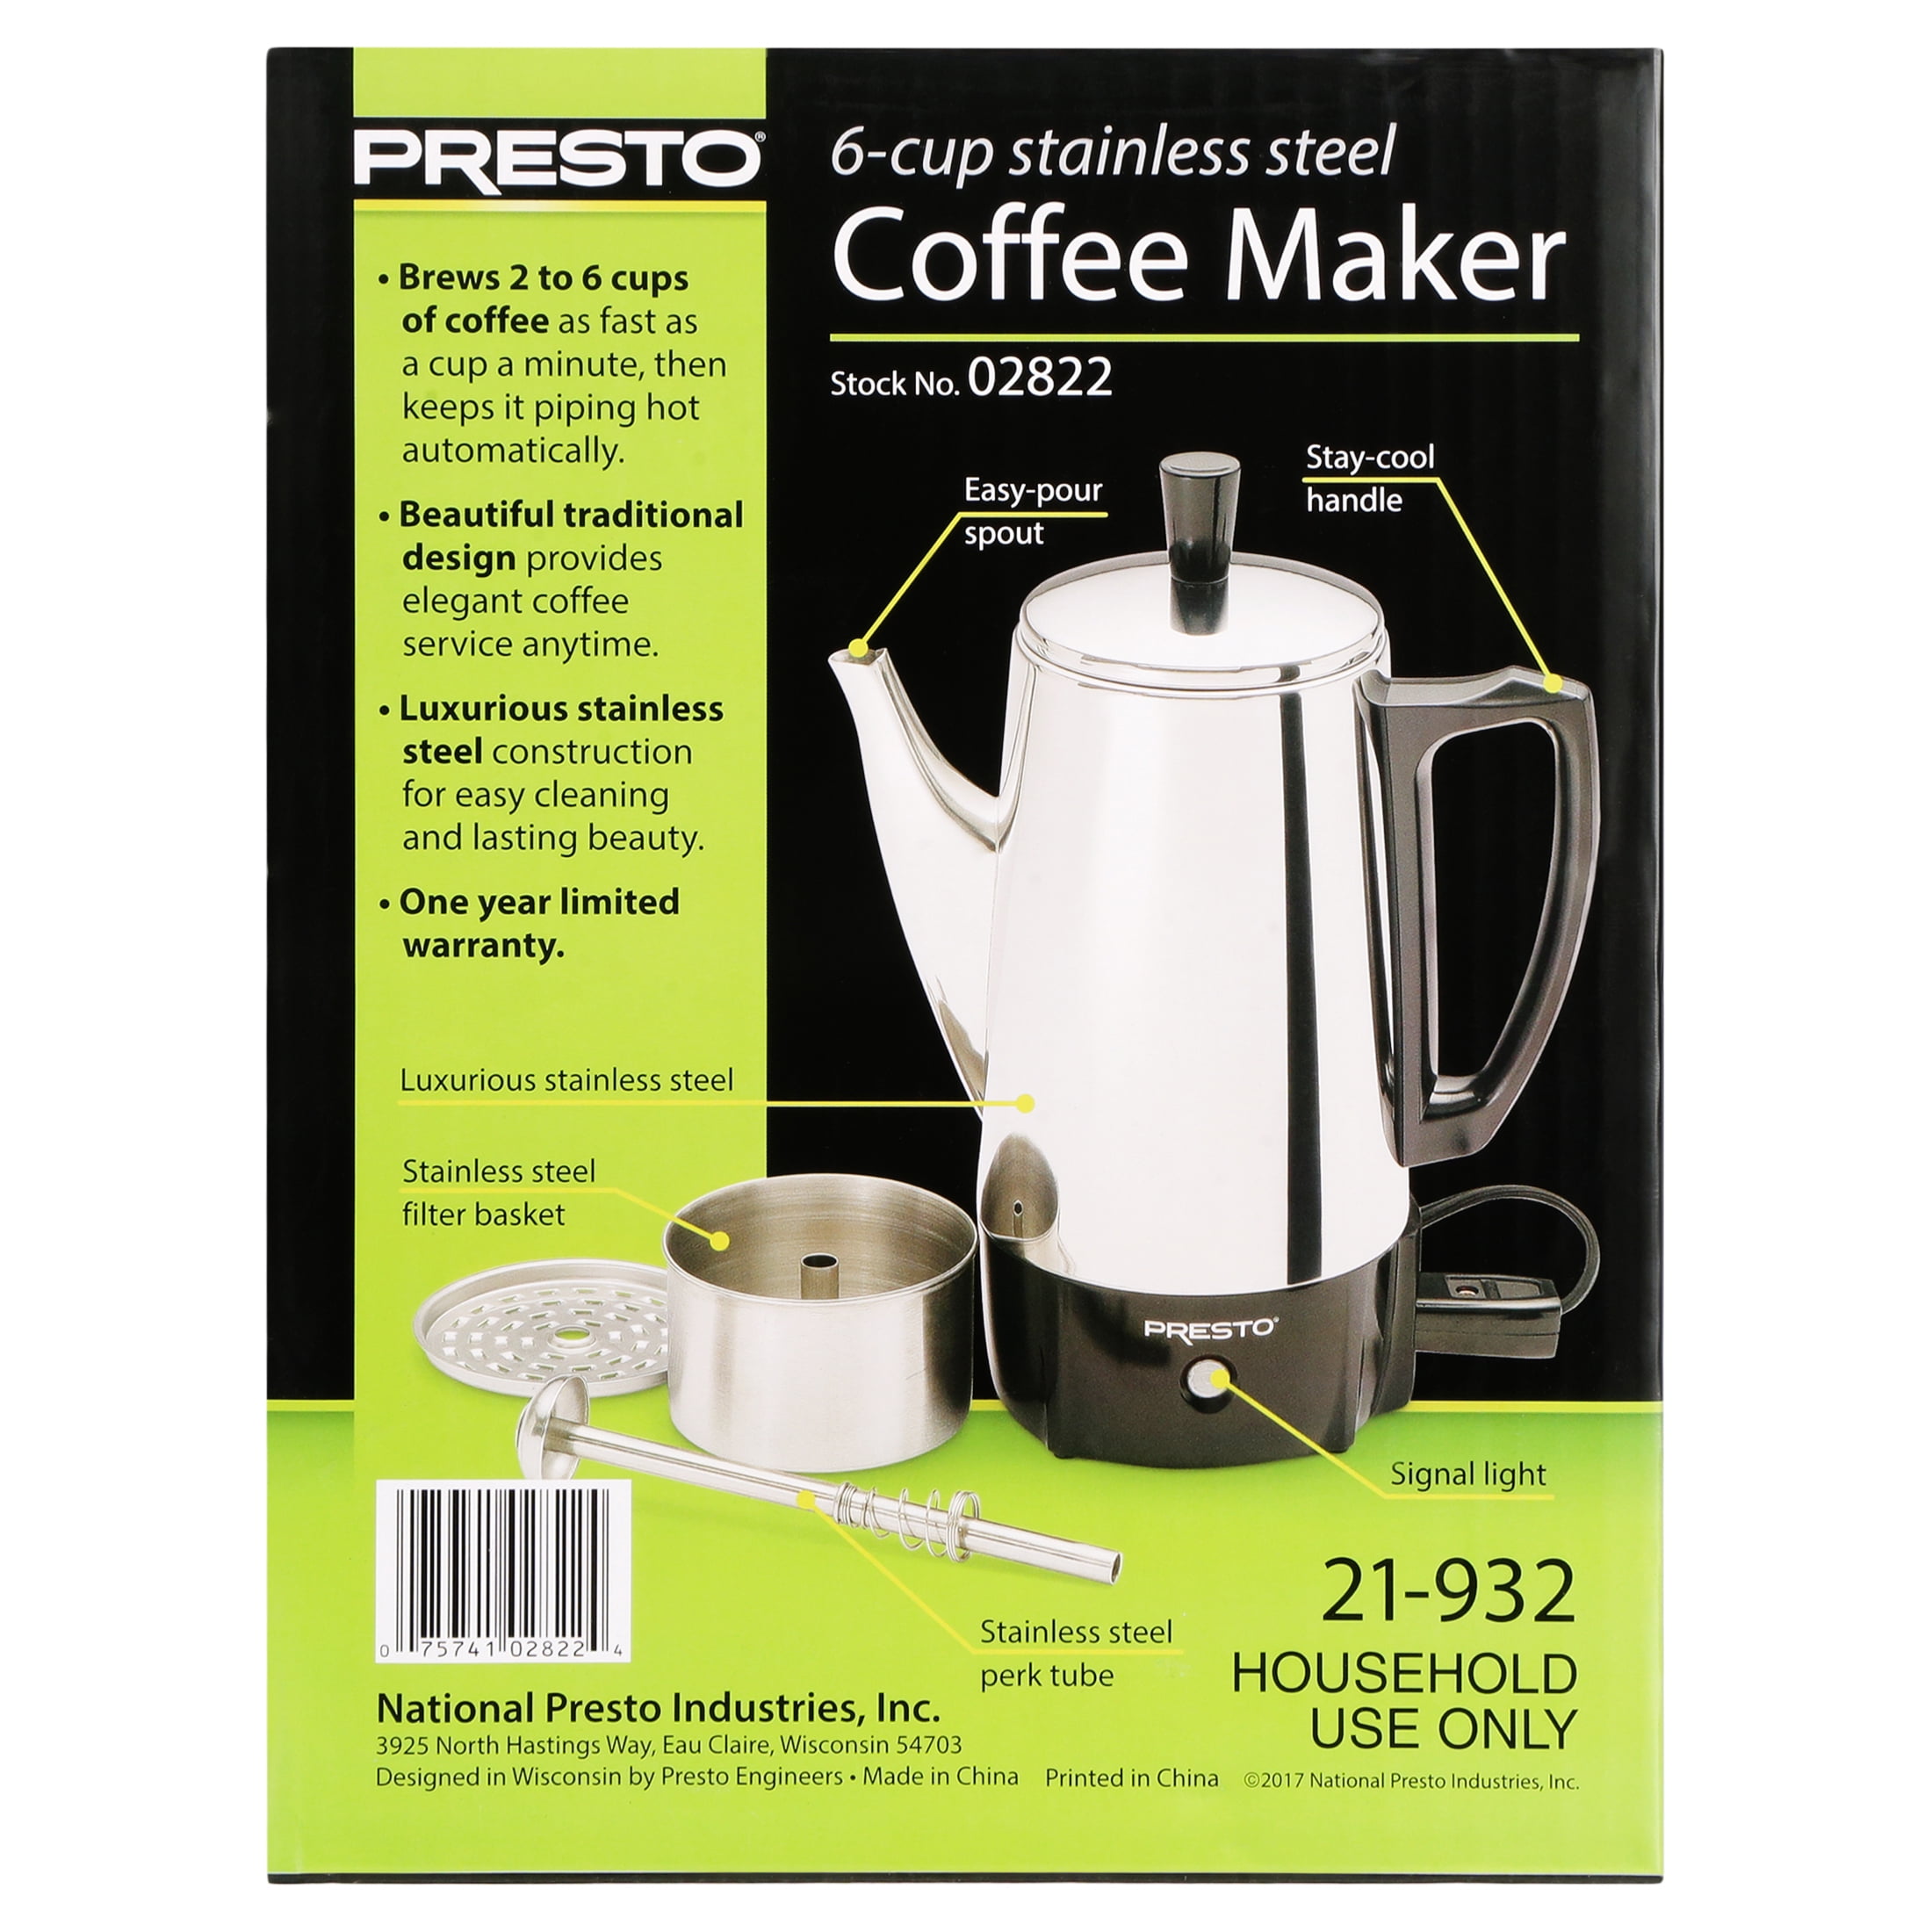 Coffee Maker - Presto